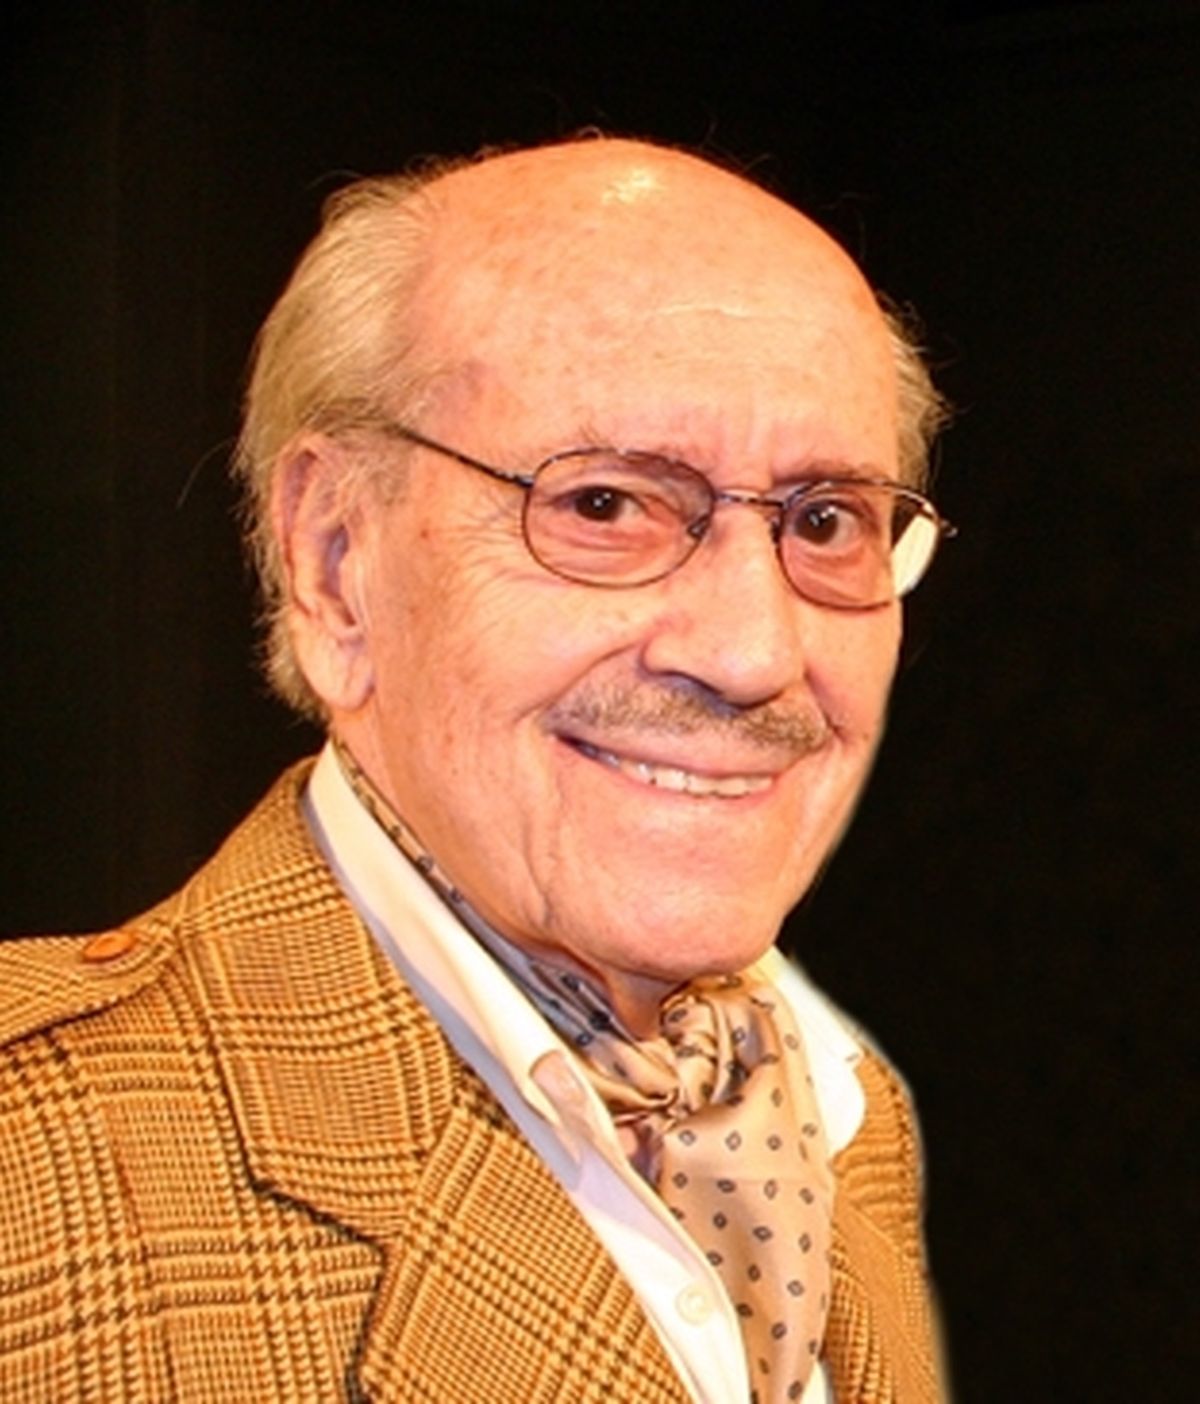 El actor José Luis López Vázquez tuvo una exitosa carrera que lo hizo acreedor de numerosos premios, entre ellos, el Goya de Honor. Vídeo: Informativos Telecinco.